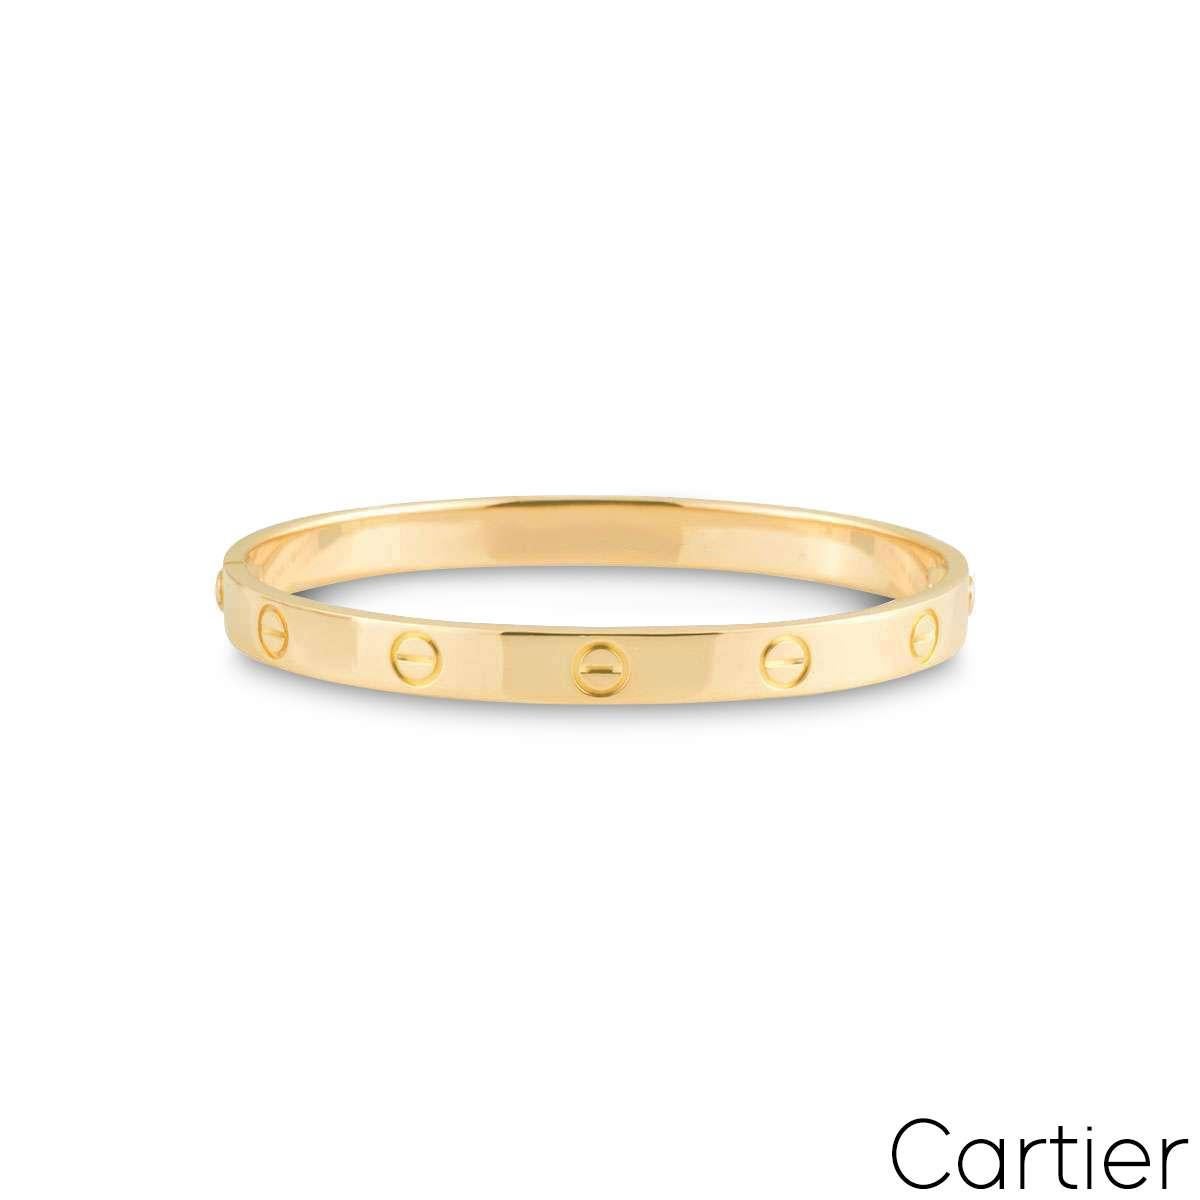 Un bracelet iconique de Cartier en or jaune 18 carats, de la collection Love. Doté du motif à vis caractéristique de Cartier, ce bracelet est équipé d'un nouveau style d'emboîtement à vis. Pesant 34,9 grammes, le bracelet est de taille 18.

Livré